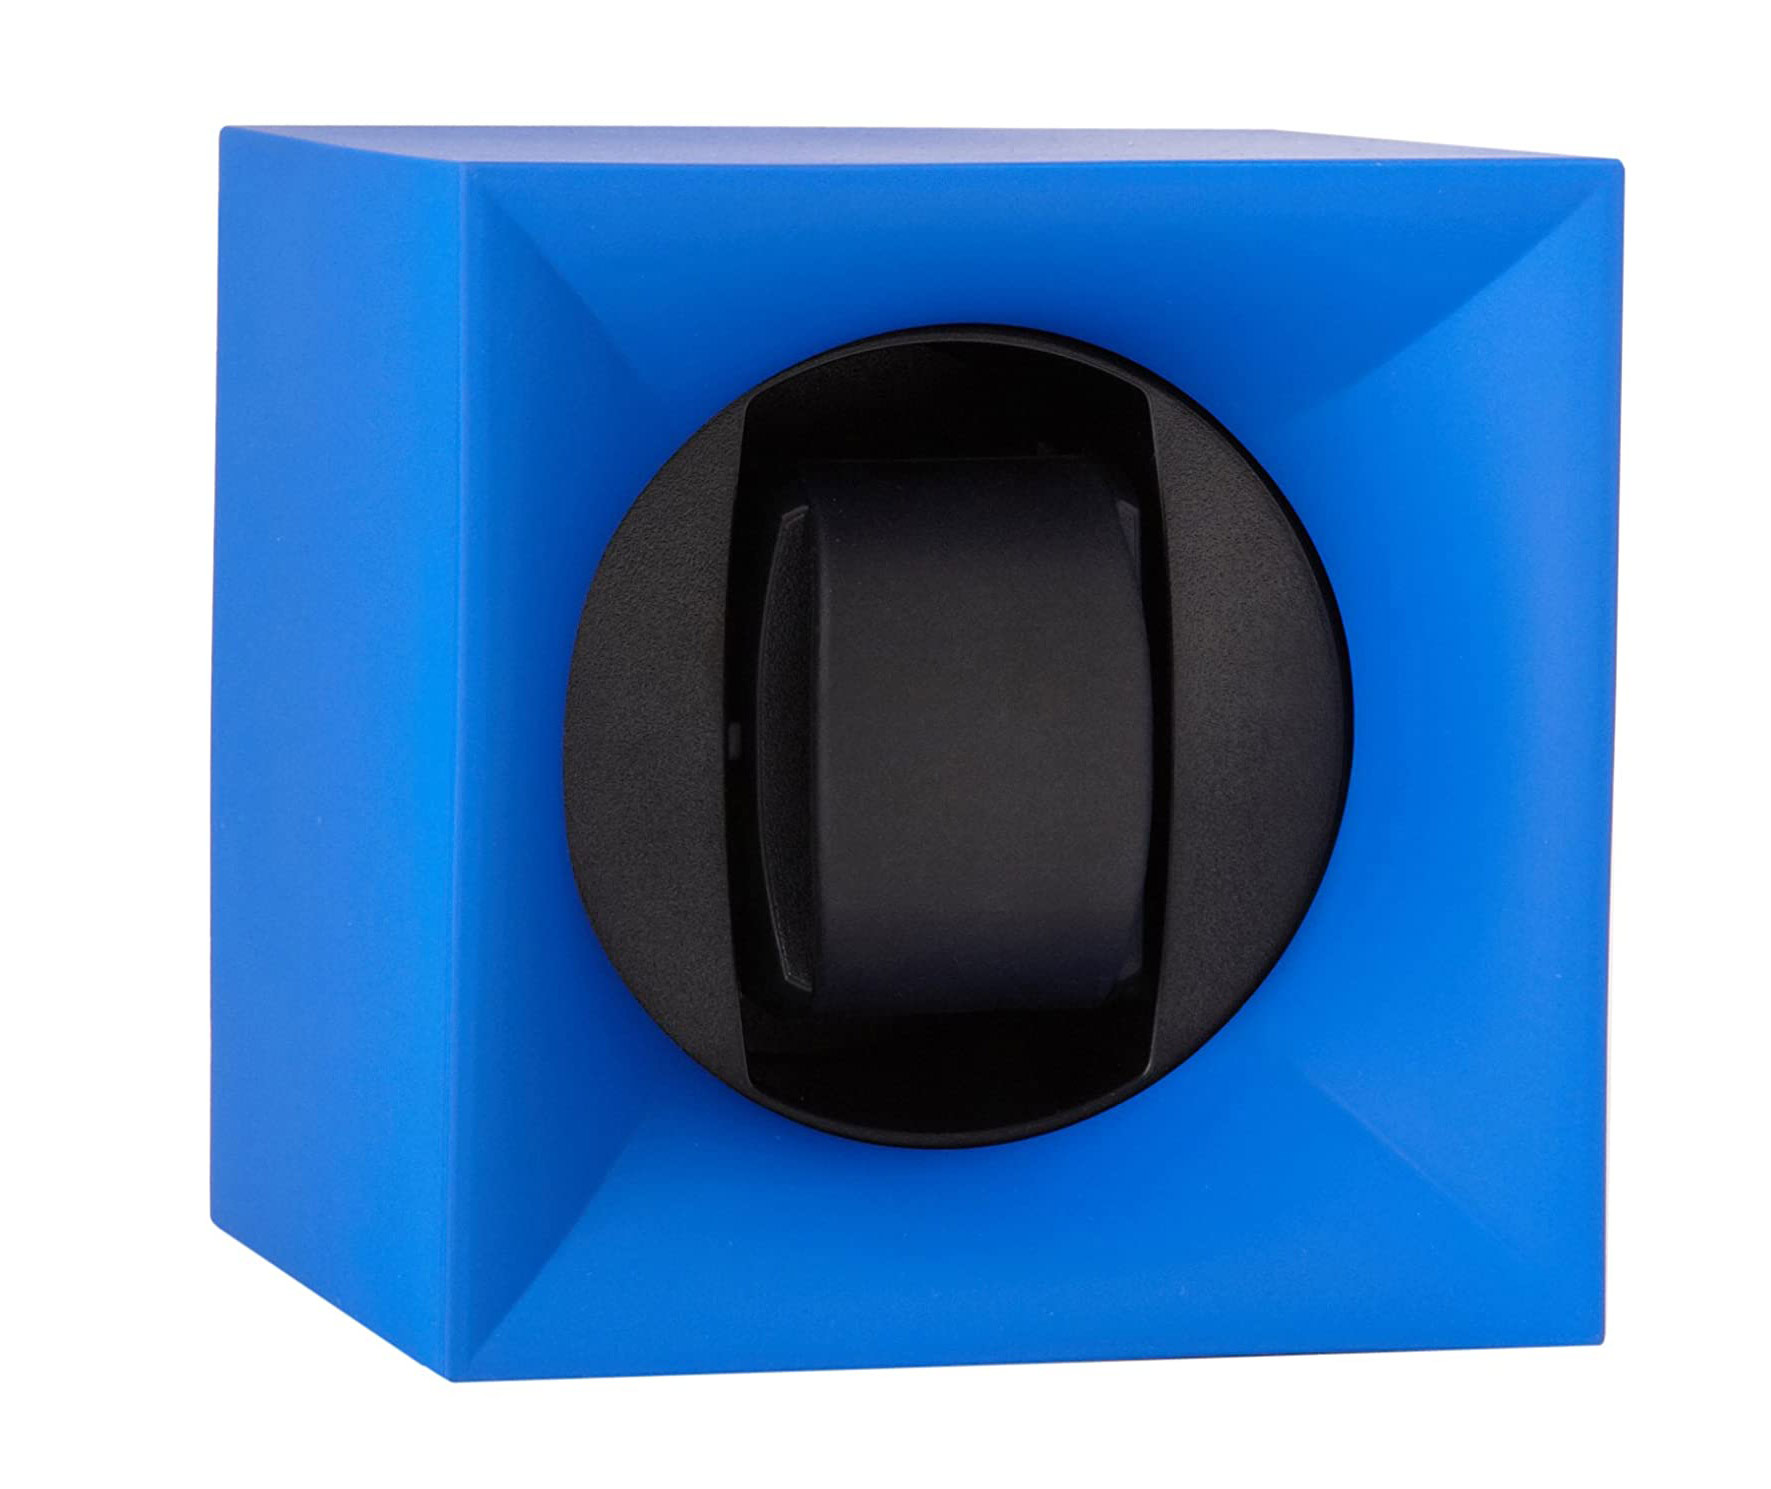 SK01.STB.005 Шкатулка SwissKubik из коллекции StartBox для 1 часов автоподзаводом. Корпус из пластика синего цвета